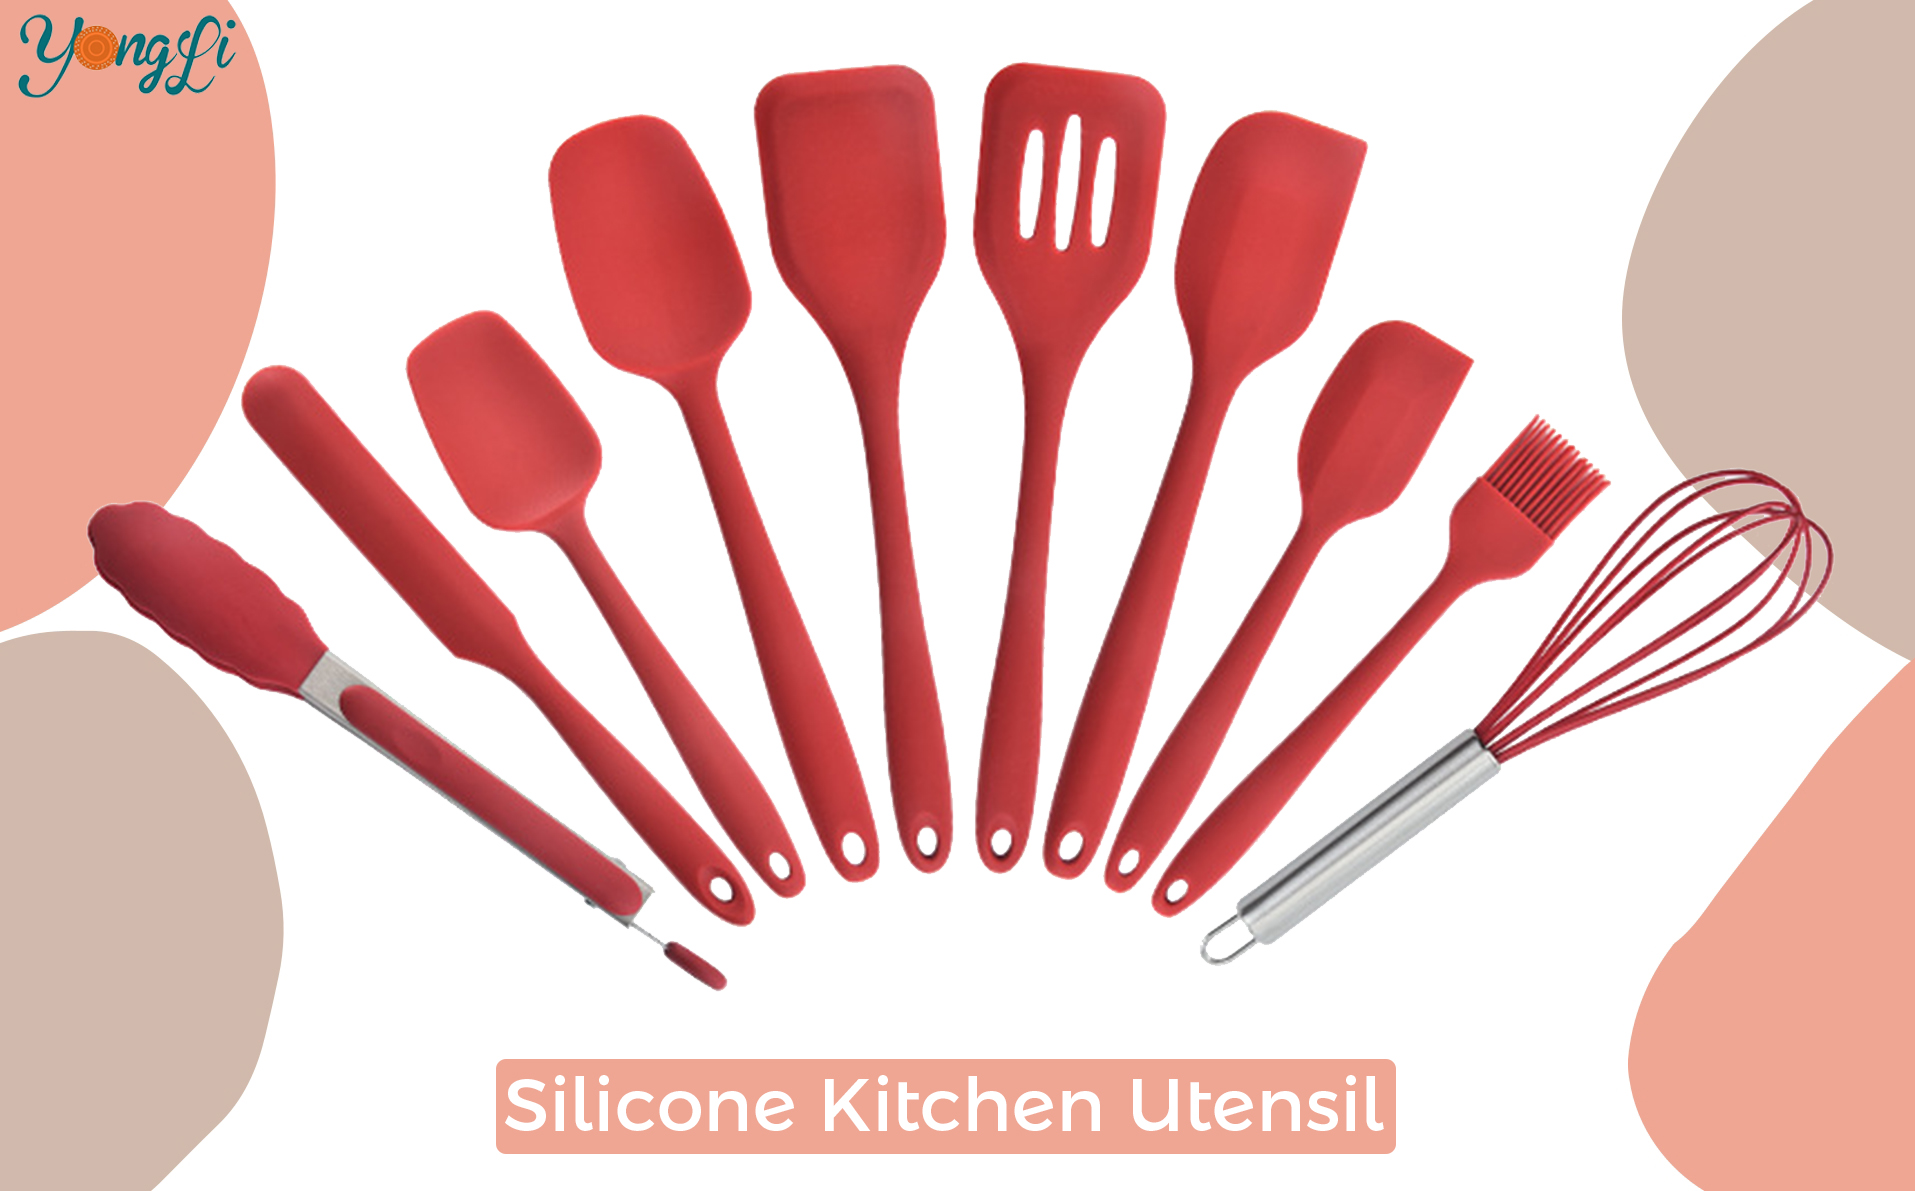 Buscas utensilios de cociña de silicona?|Yongli